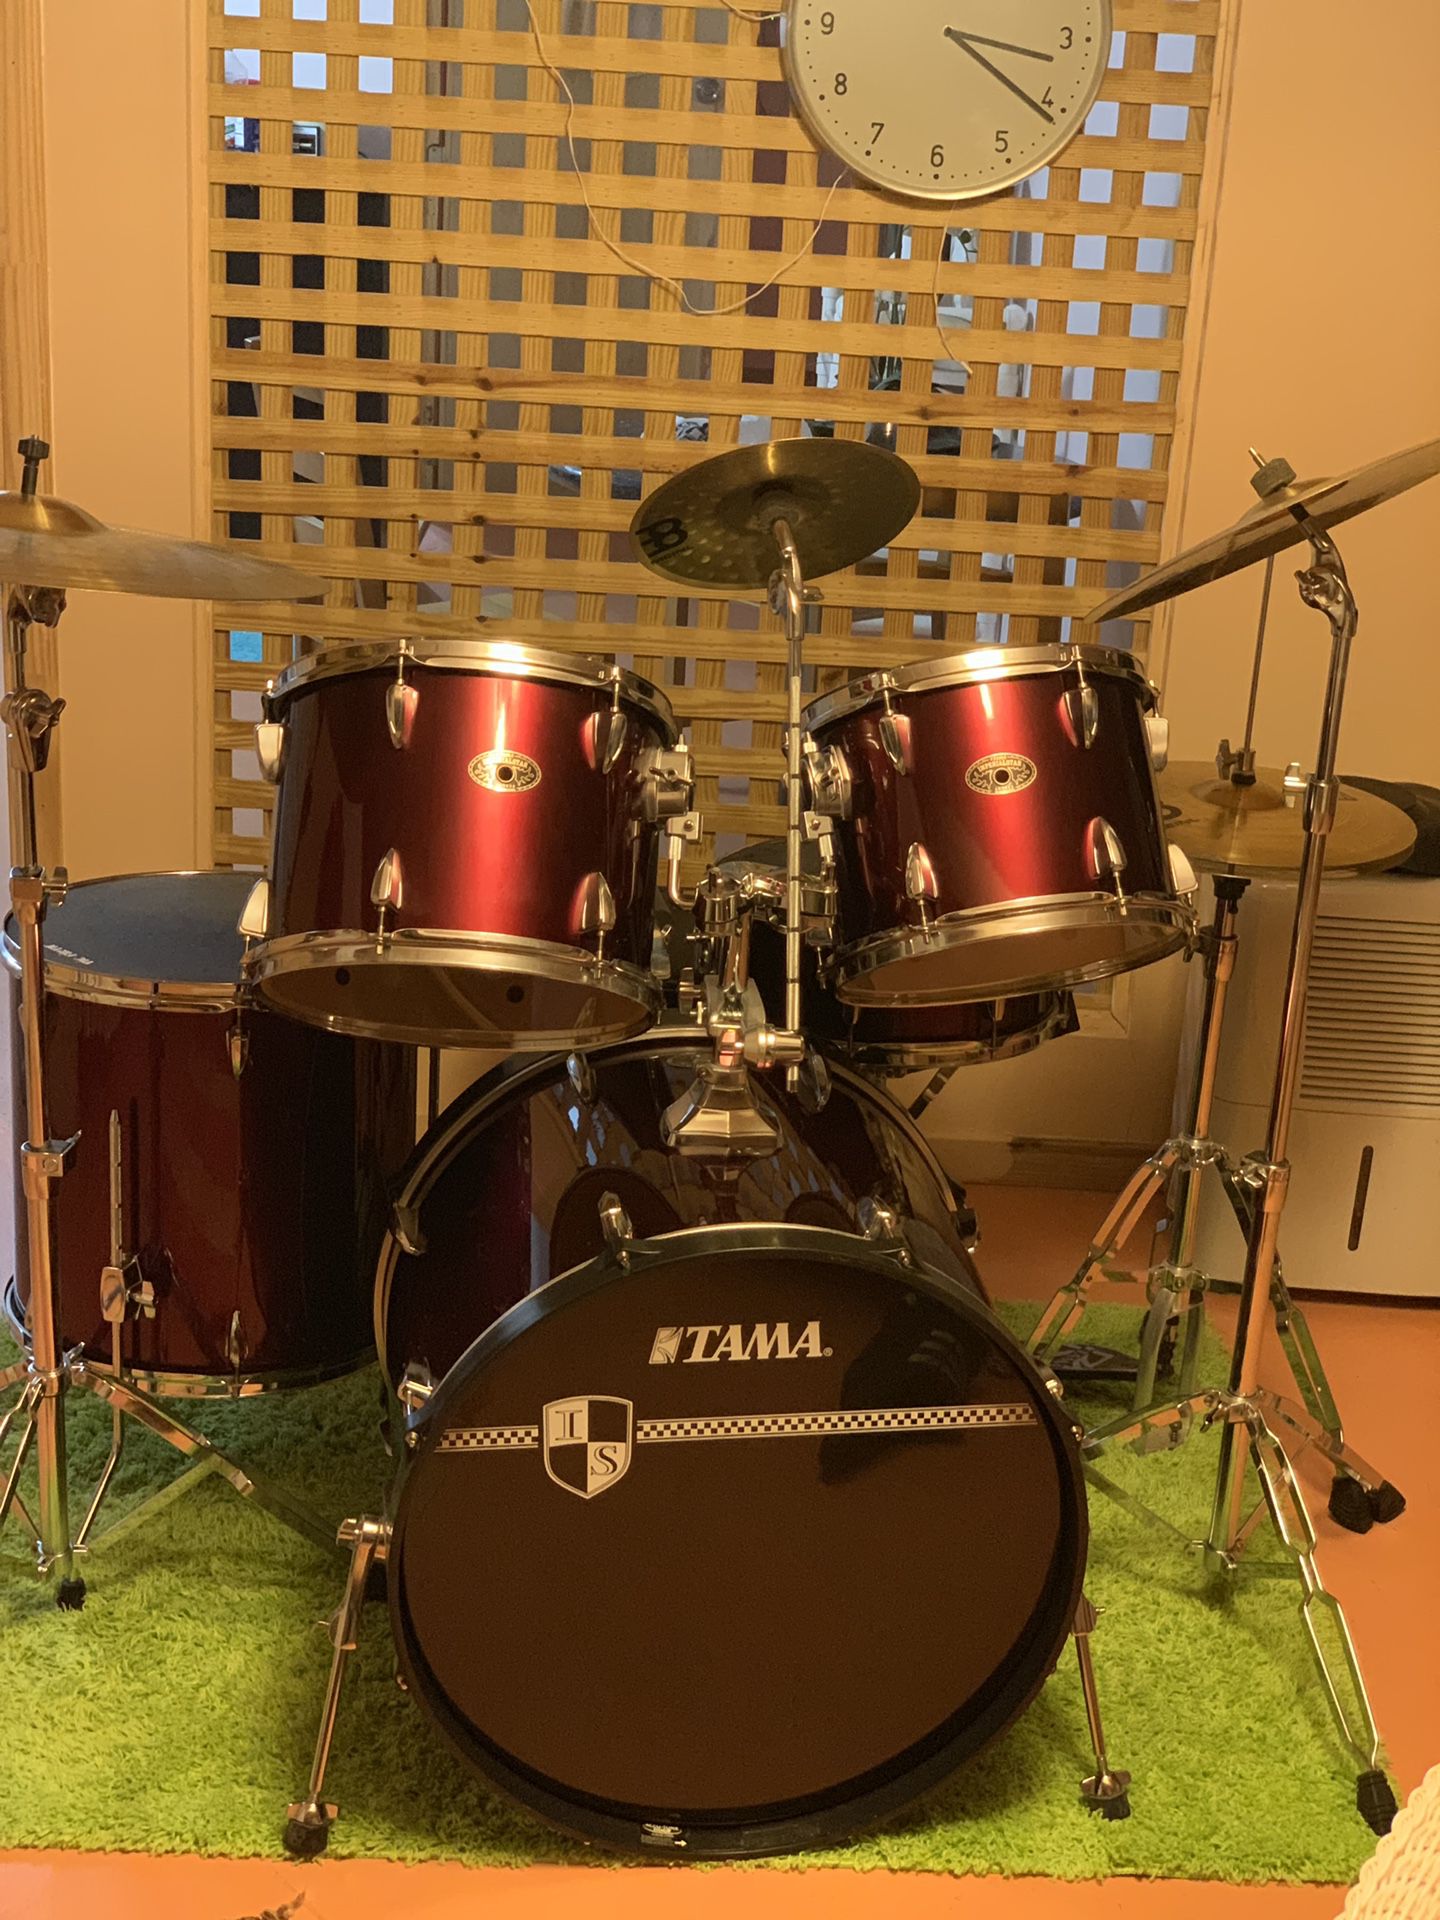 TAMA / drums